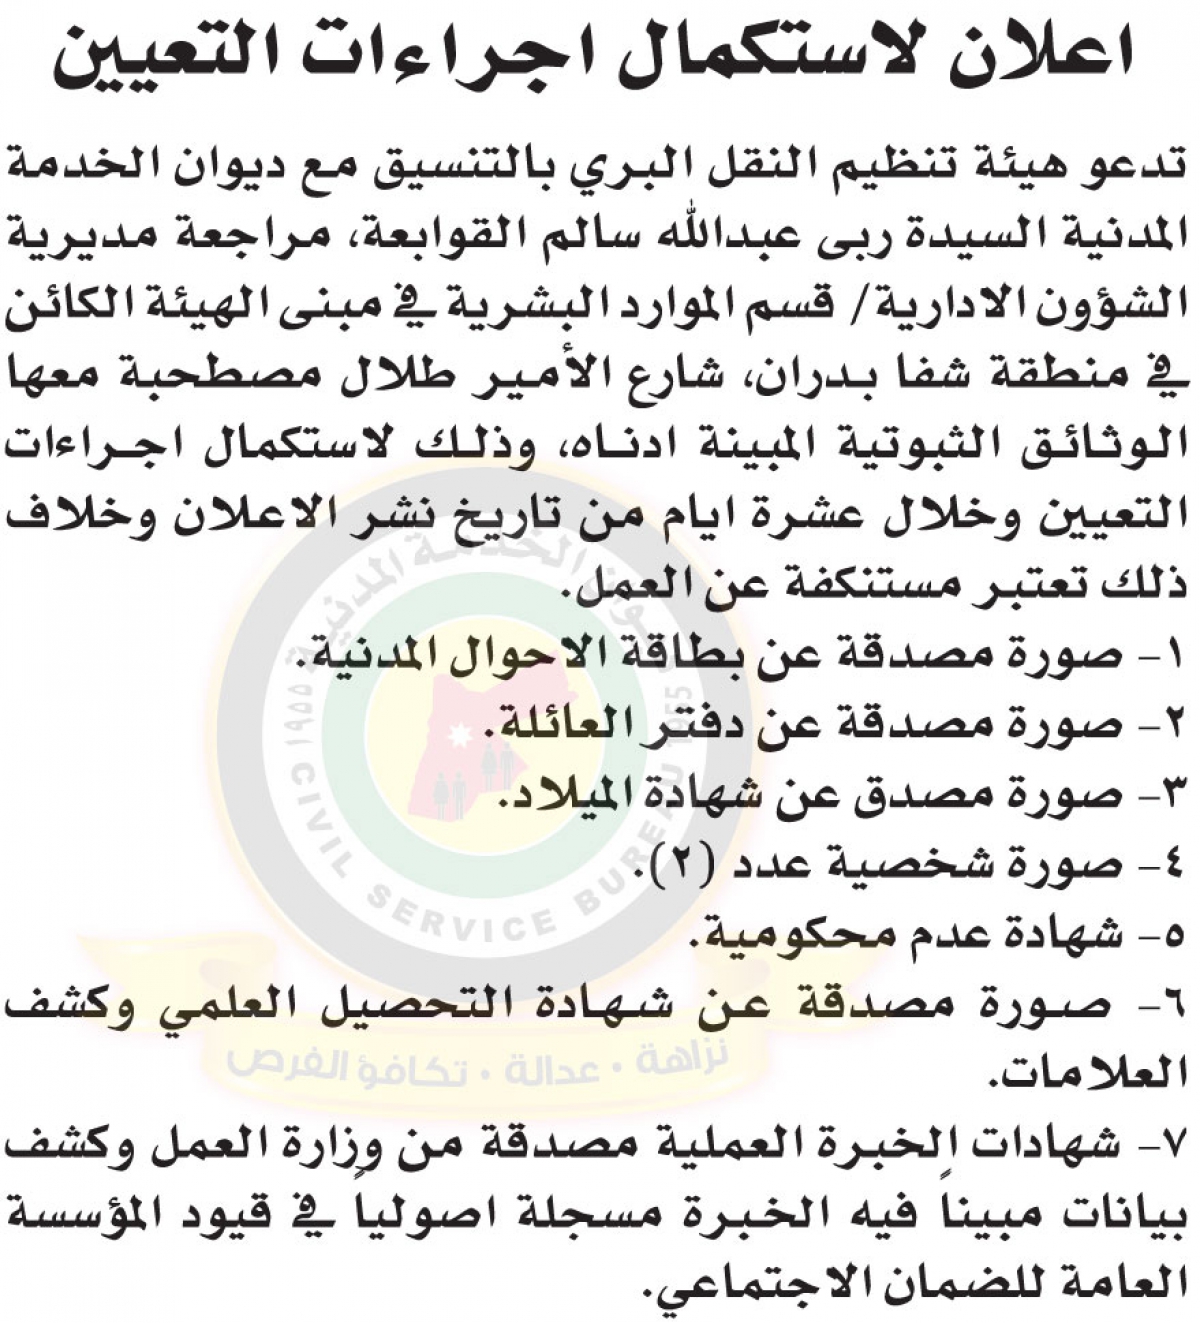 إعلان صادر عن هيئة تنظيم النقل البري لاستكمال إجراءات التعيين للسيدة ربى عبدالله سالم القوابعة